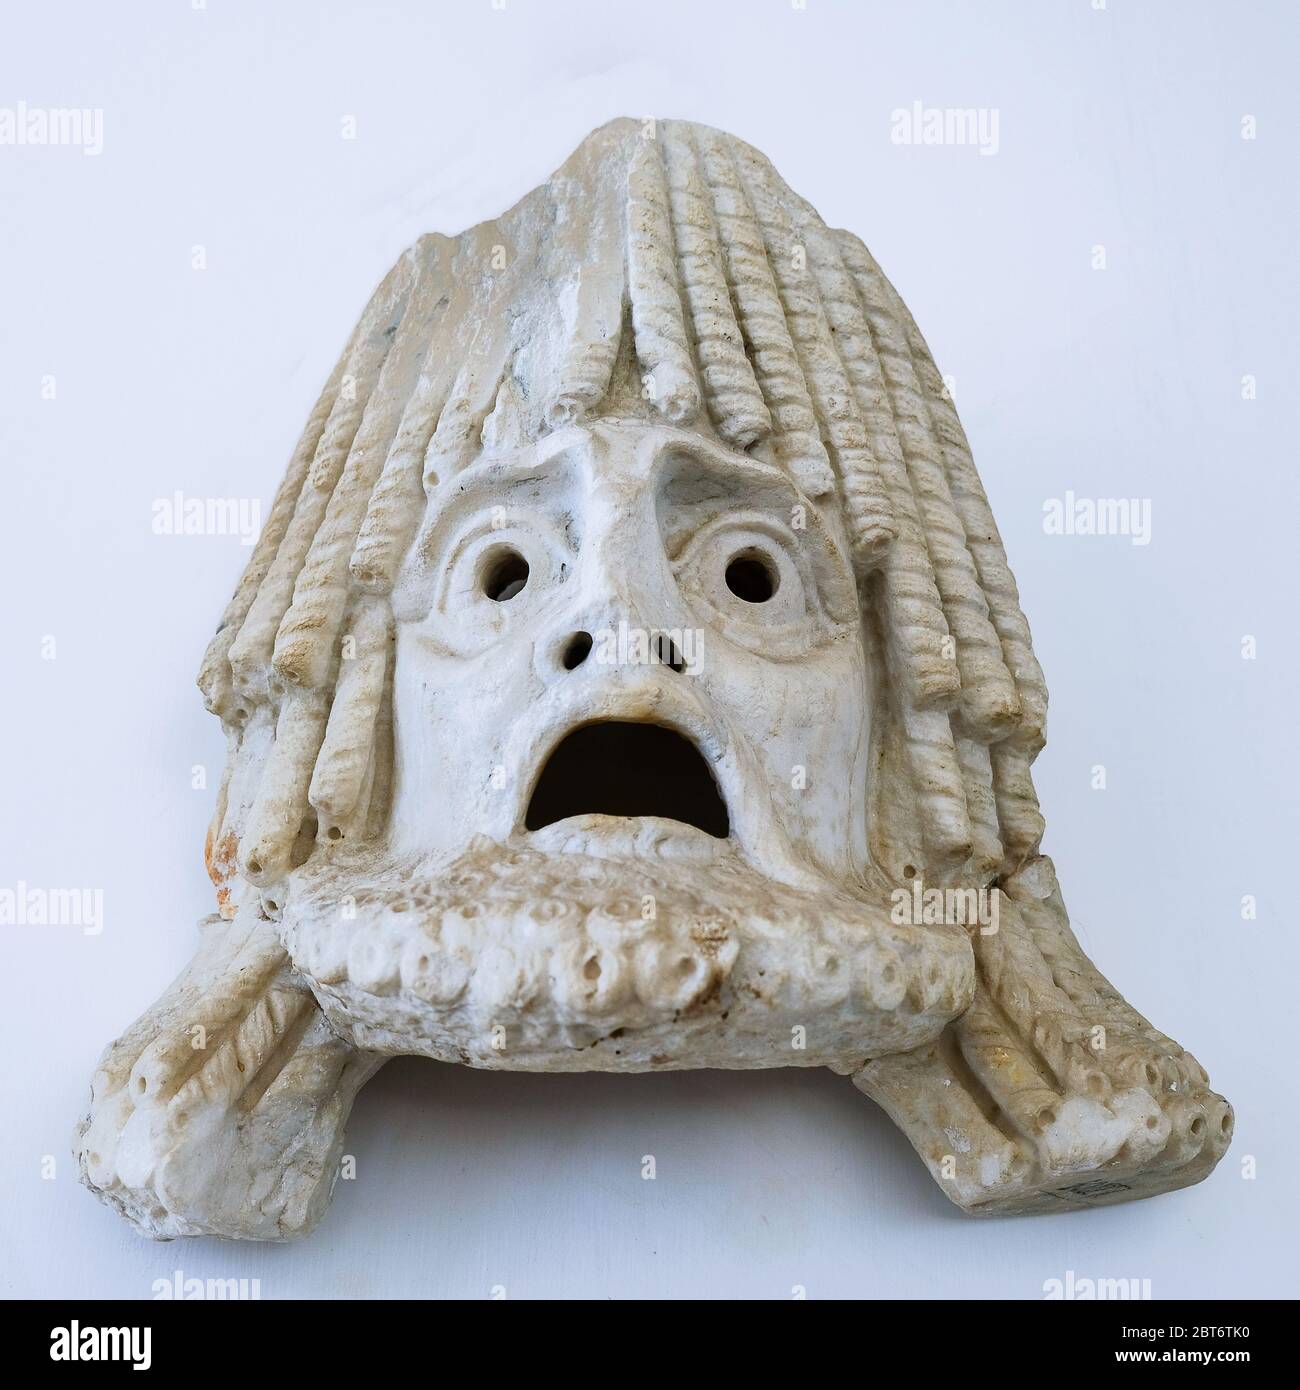 Female head, ancient theater mask in Museo Archeologico Nazionale, Sperlonga, Lazio, Italy. Stock Photo